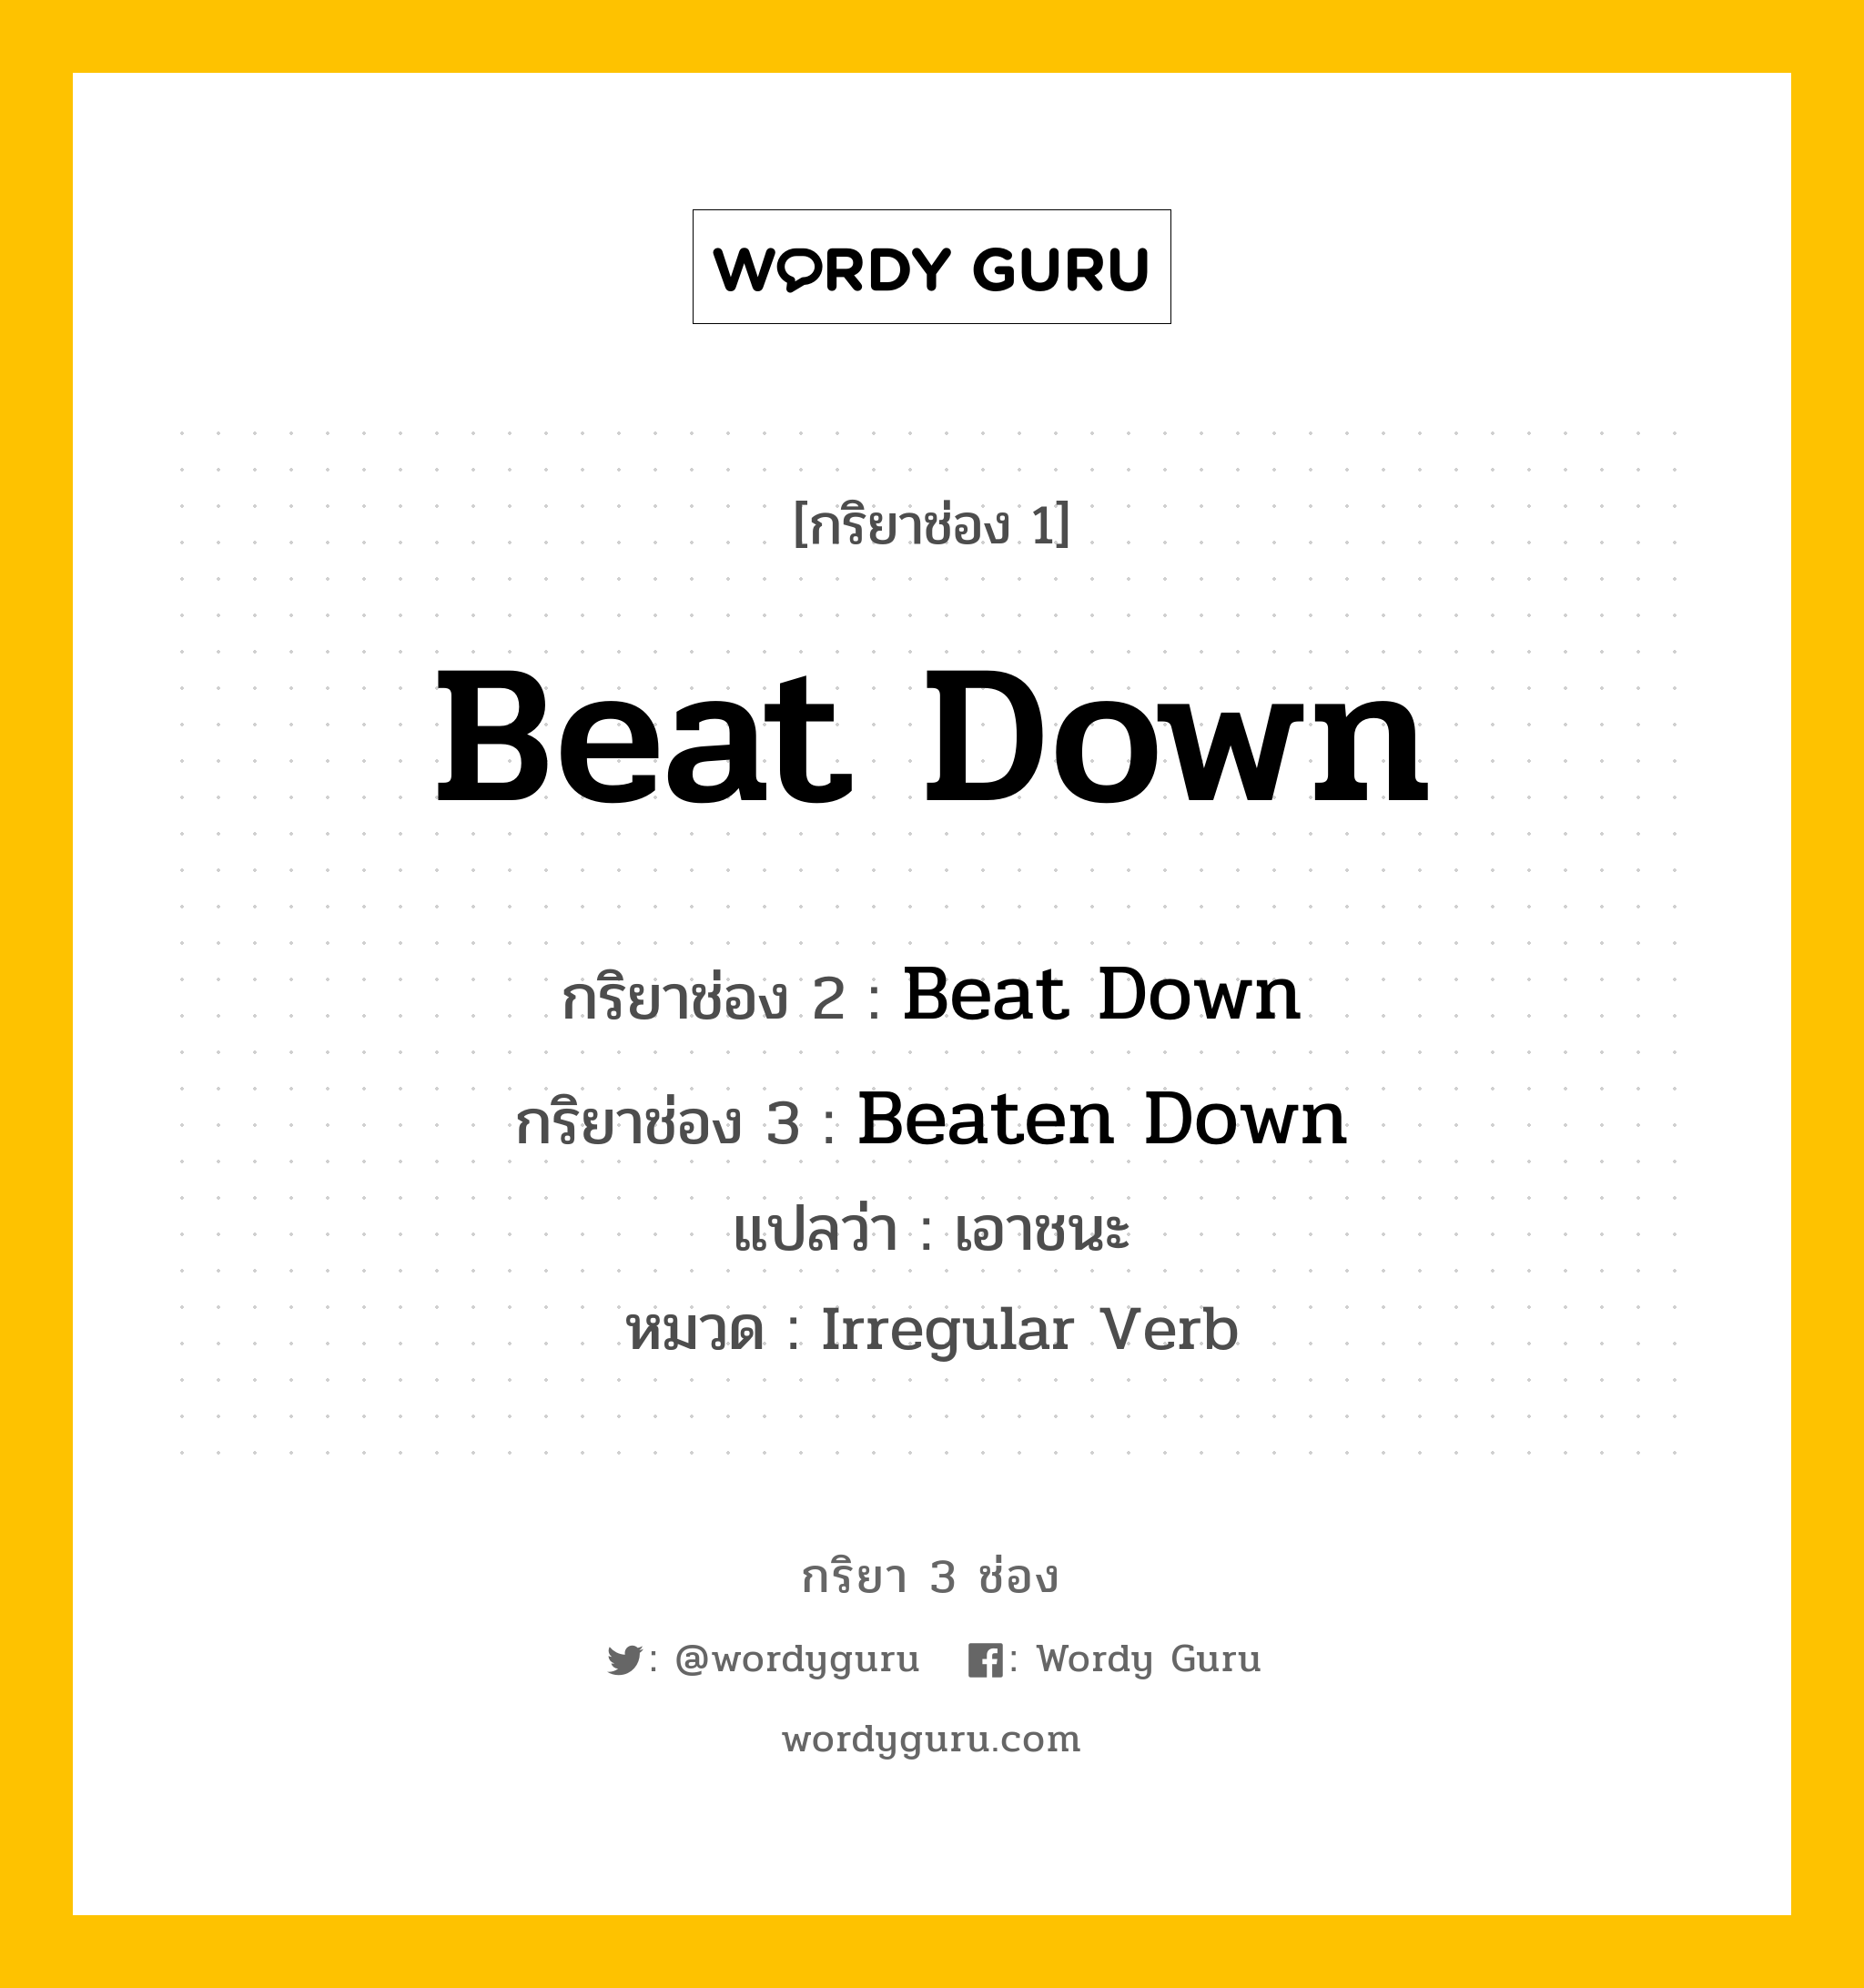 Beat Down มีกริยา 3 ช่องอะไรบ้าง? คำศัพท์ในกลุ่มประเภท Irregular Verb, กริยาช่อง 1 Beat Down กริยาช่อง 2 Beat Down กริยาช่อง 3 Beaten Down แปลว่า เอาชนะ หมวด Irregular Verb หมวด Irregular Verb